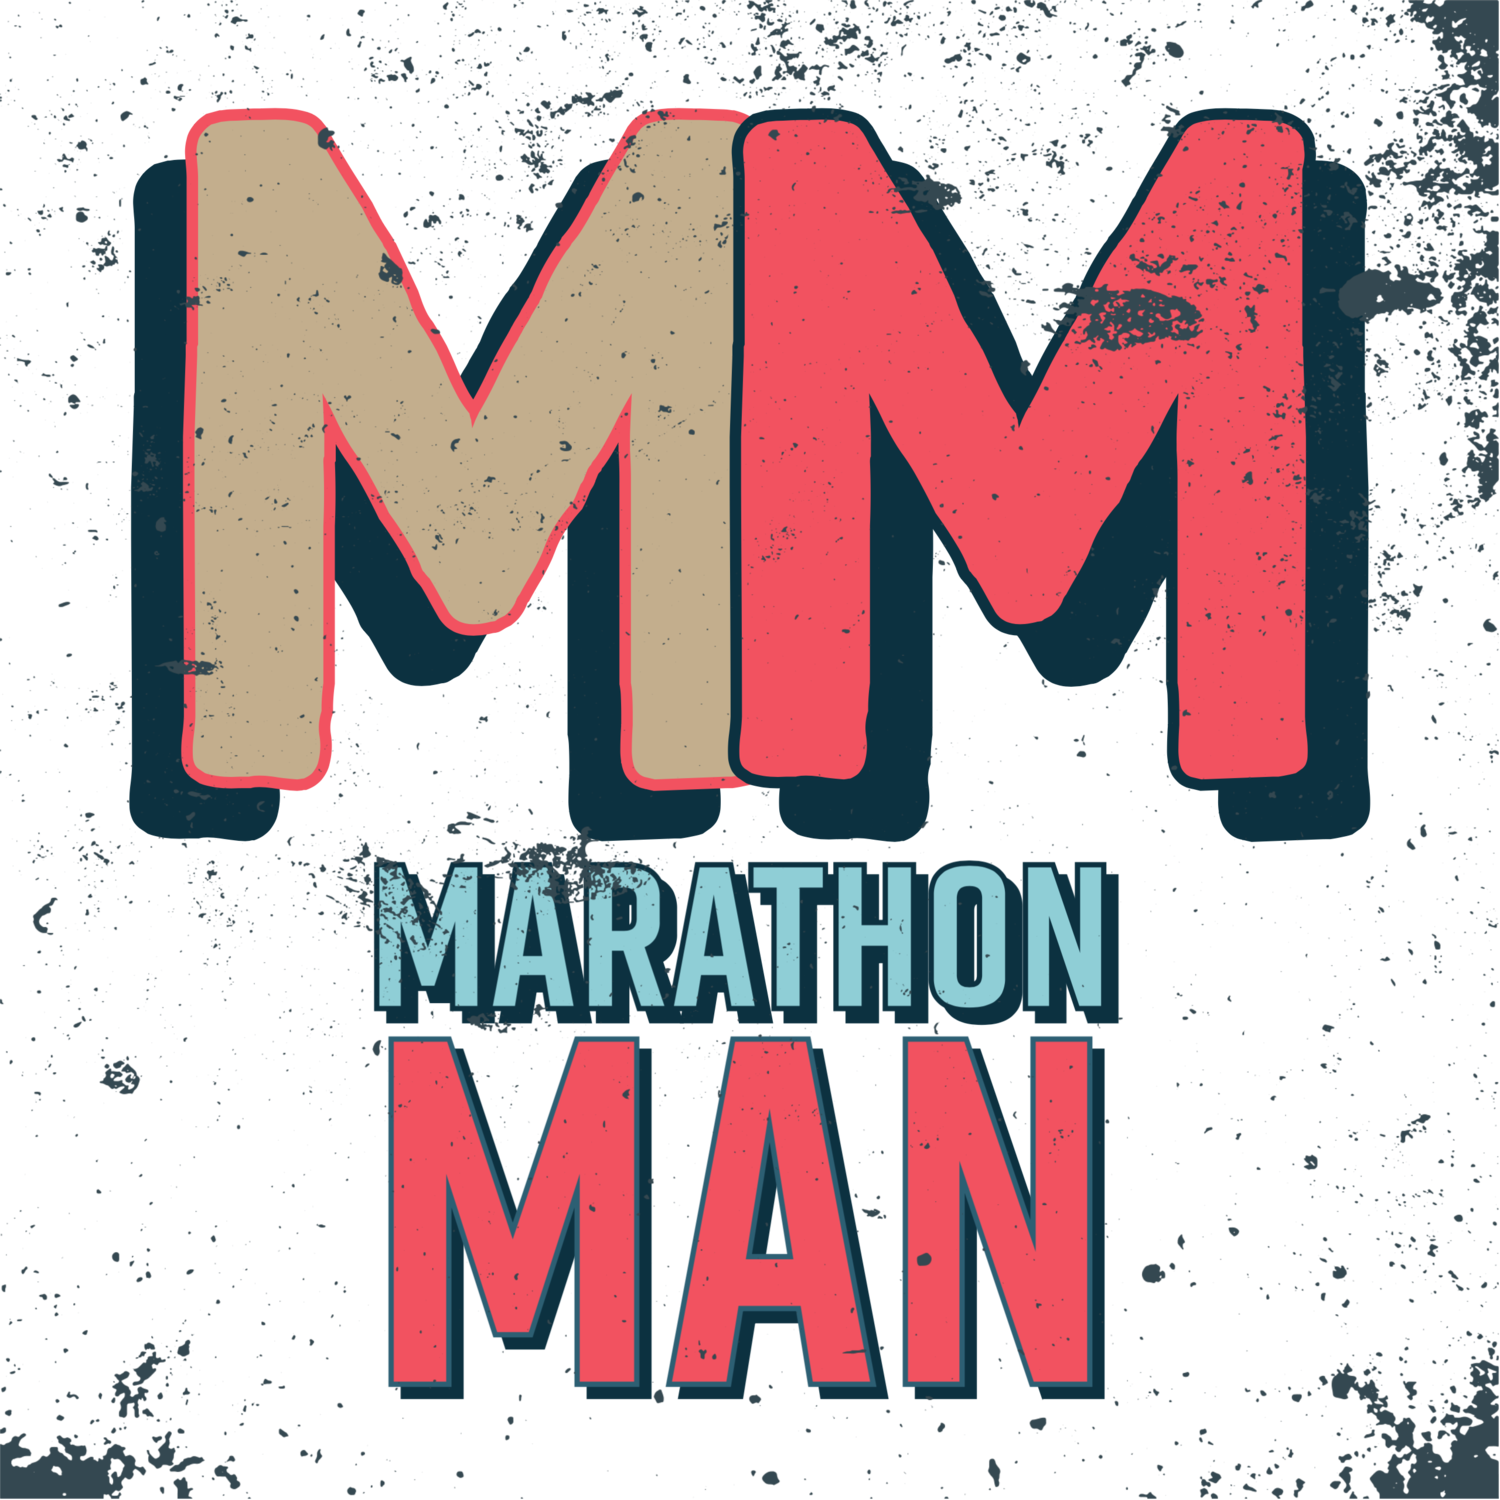 The Book of Marathon